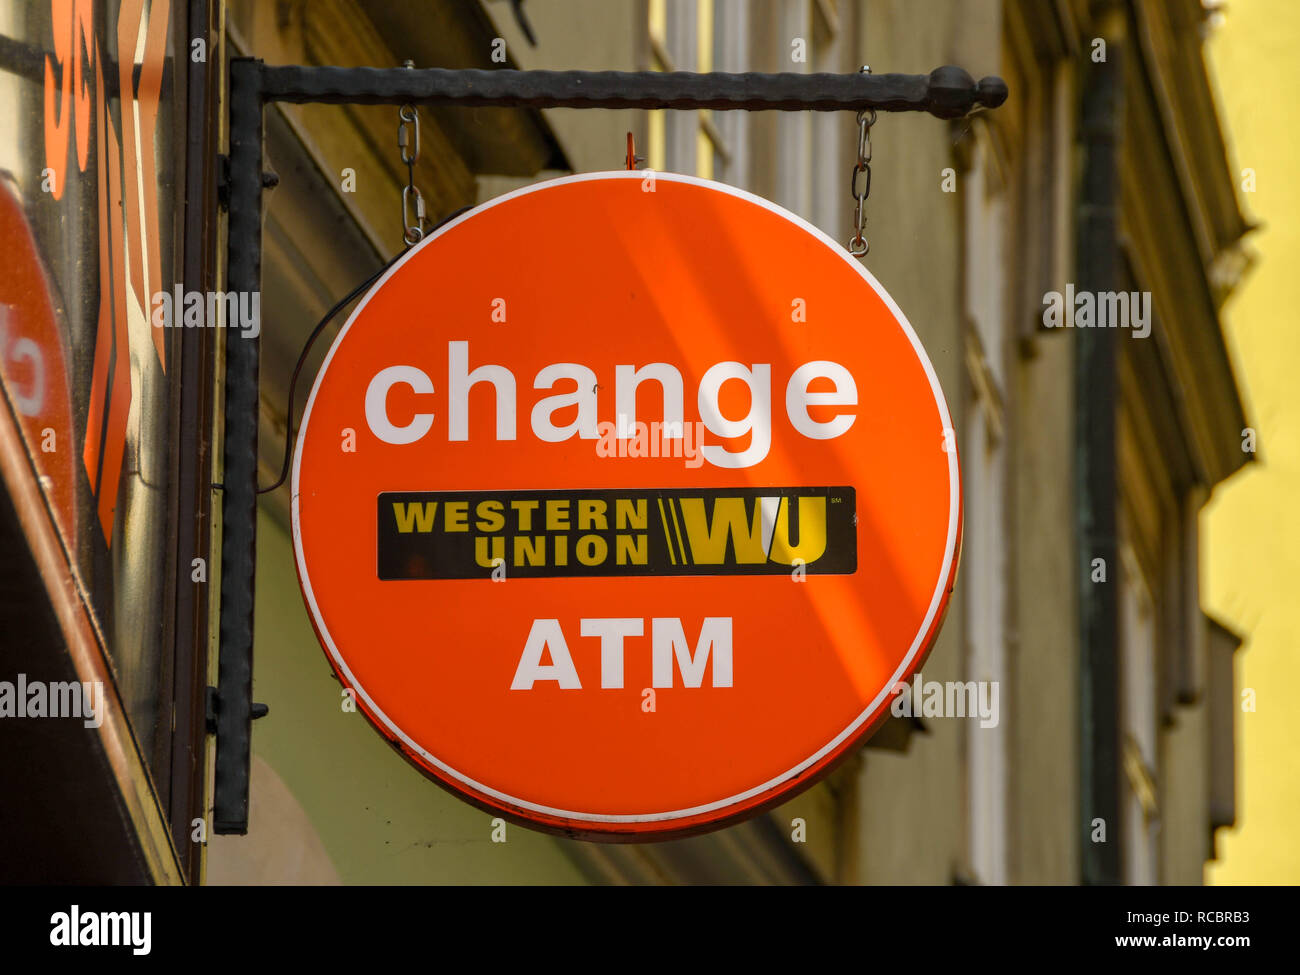 Prag, tschechische Republik - Juli 2018: Schild vor dem Eingang einer Bureau de Change Shop im Stadtzentrum Prags. Das Schild hat eine Western Union Logo. Stockfoto